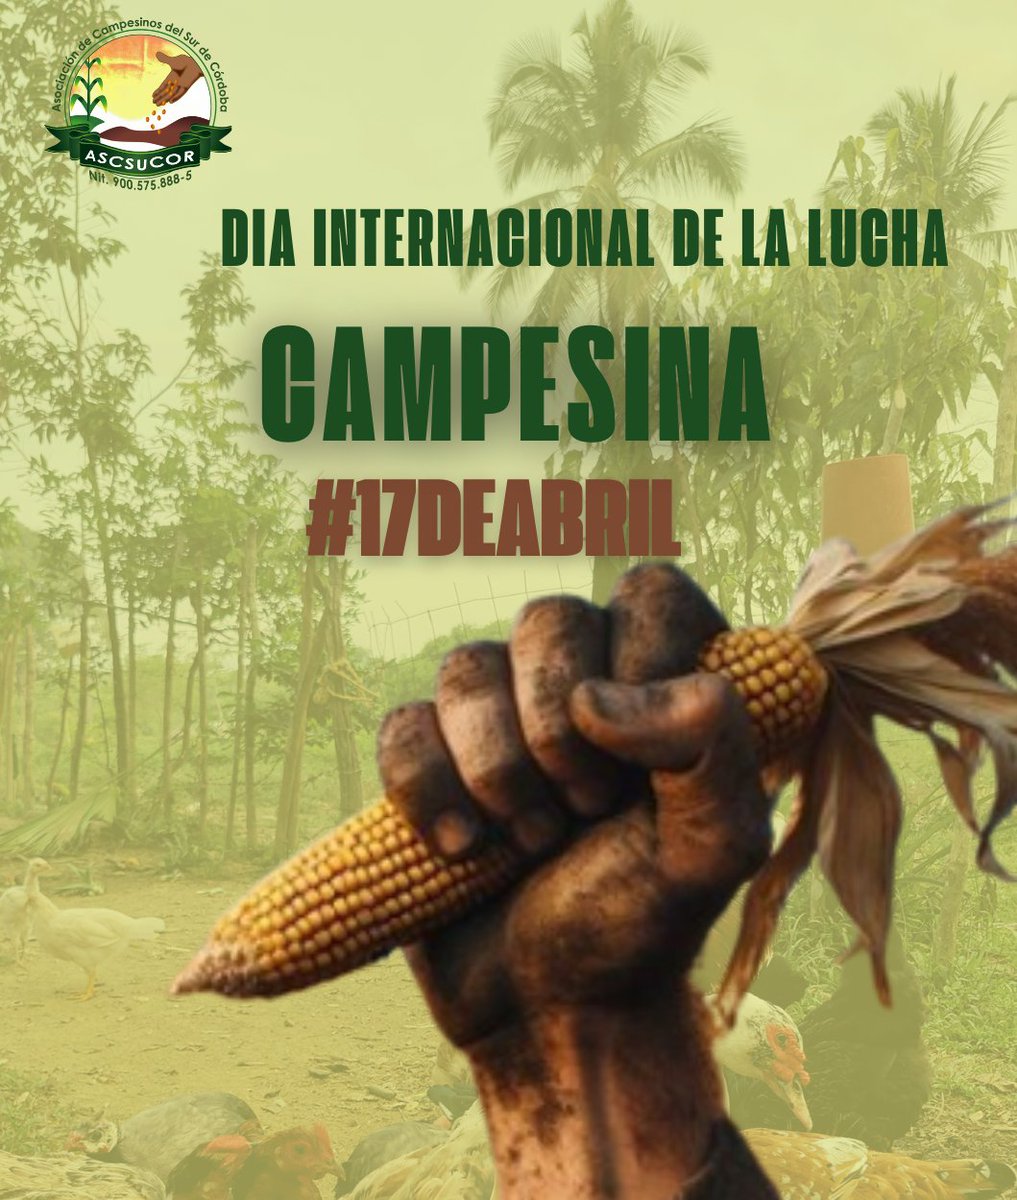 Hoy #17Abril #DíaInternacionaldelaLuchaCampesina, celebramos y resaltamos la gallardía de nuestros campesinos y campesinas, lideres y lideresas del sur de Córdoba, que luchan por los derechos del campesinado.
Desde ASCSUCOR alzamos la voz de resistencia por el reconocimiento a